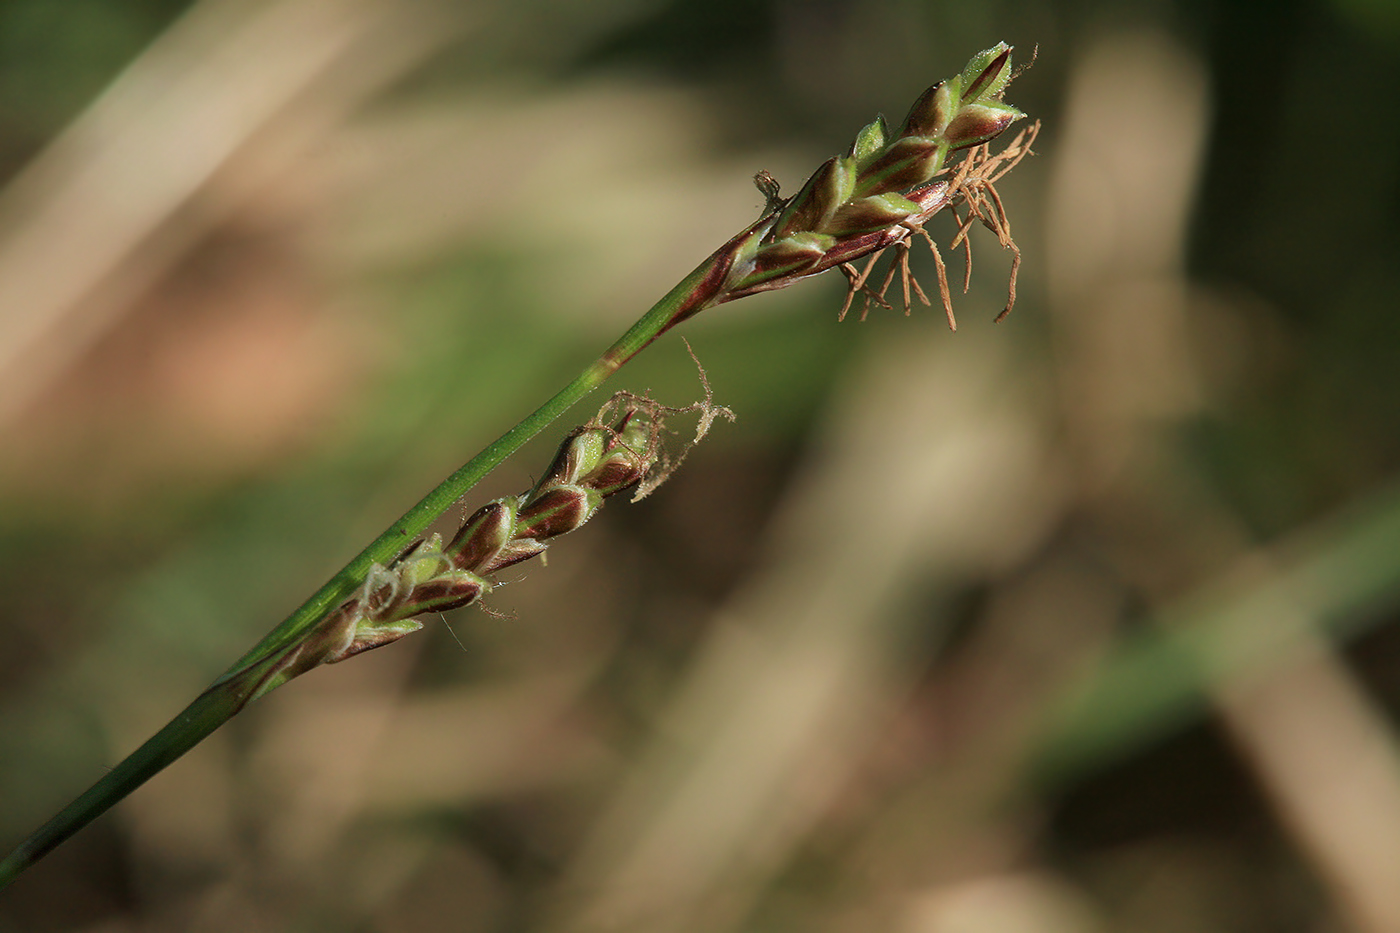 Image of Carex rhizina specimen.